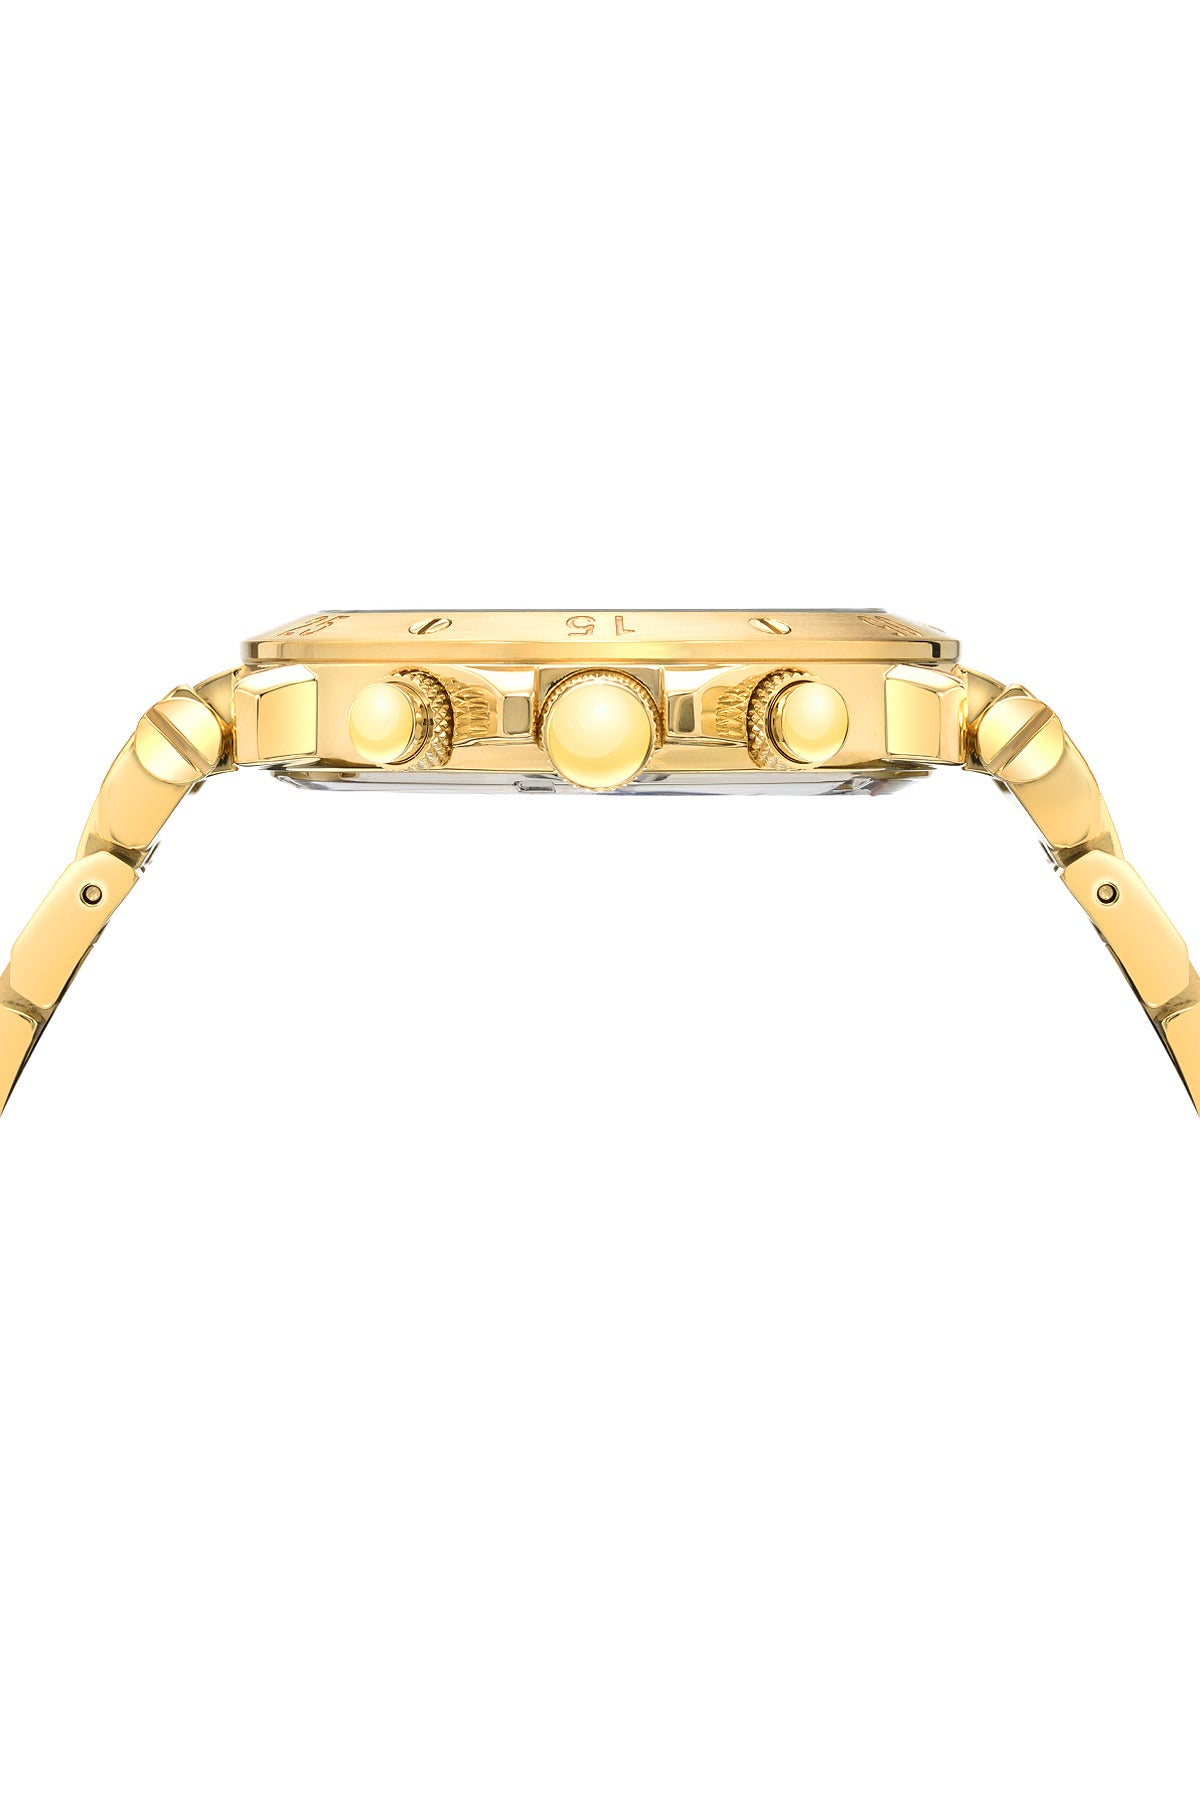 Porsamo Bleu Sasha luxury chronograph men's stainless steel watch, gold, white 441BSAS